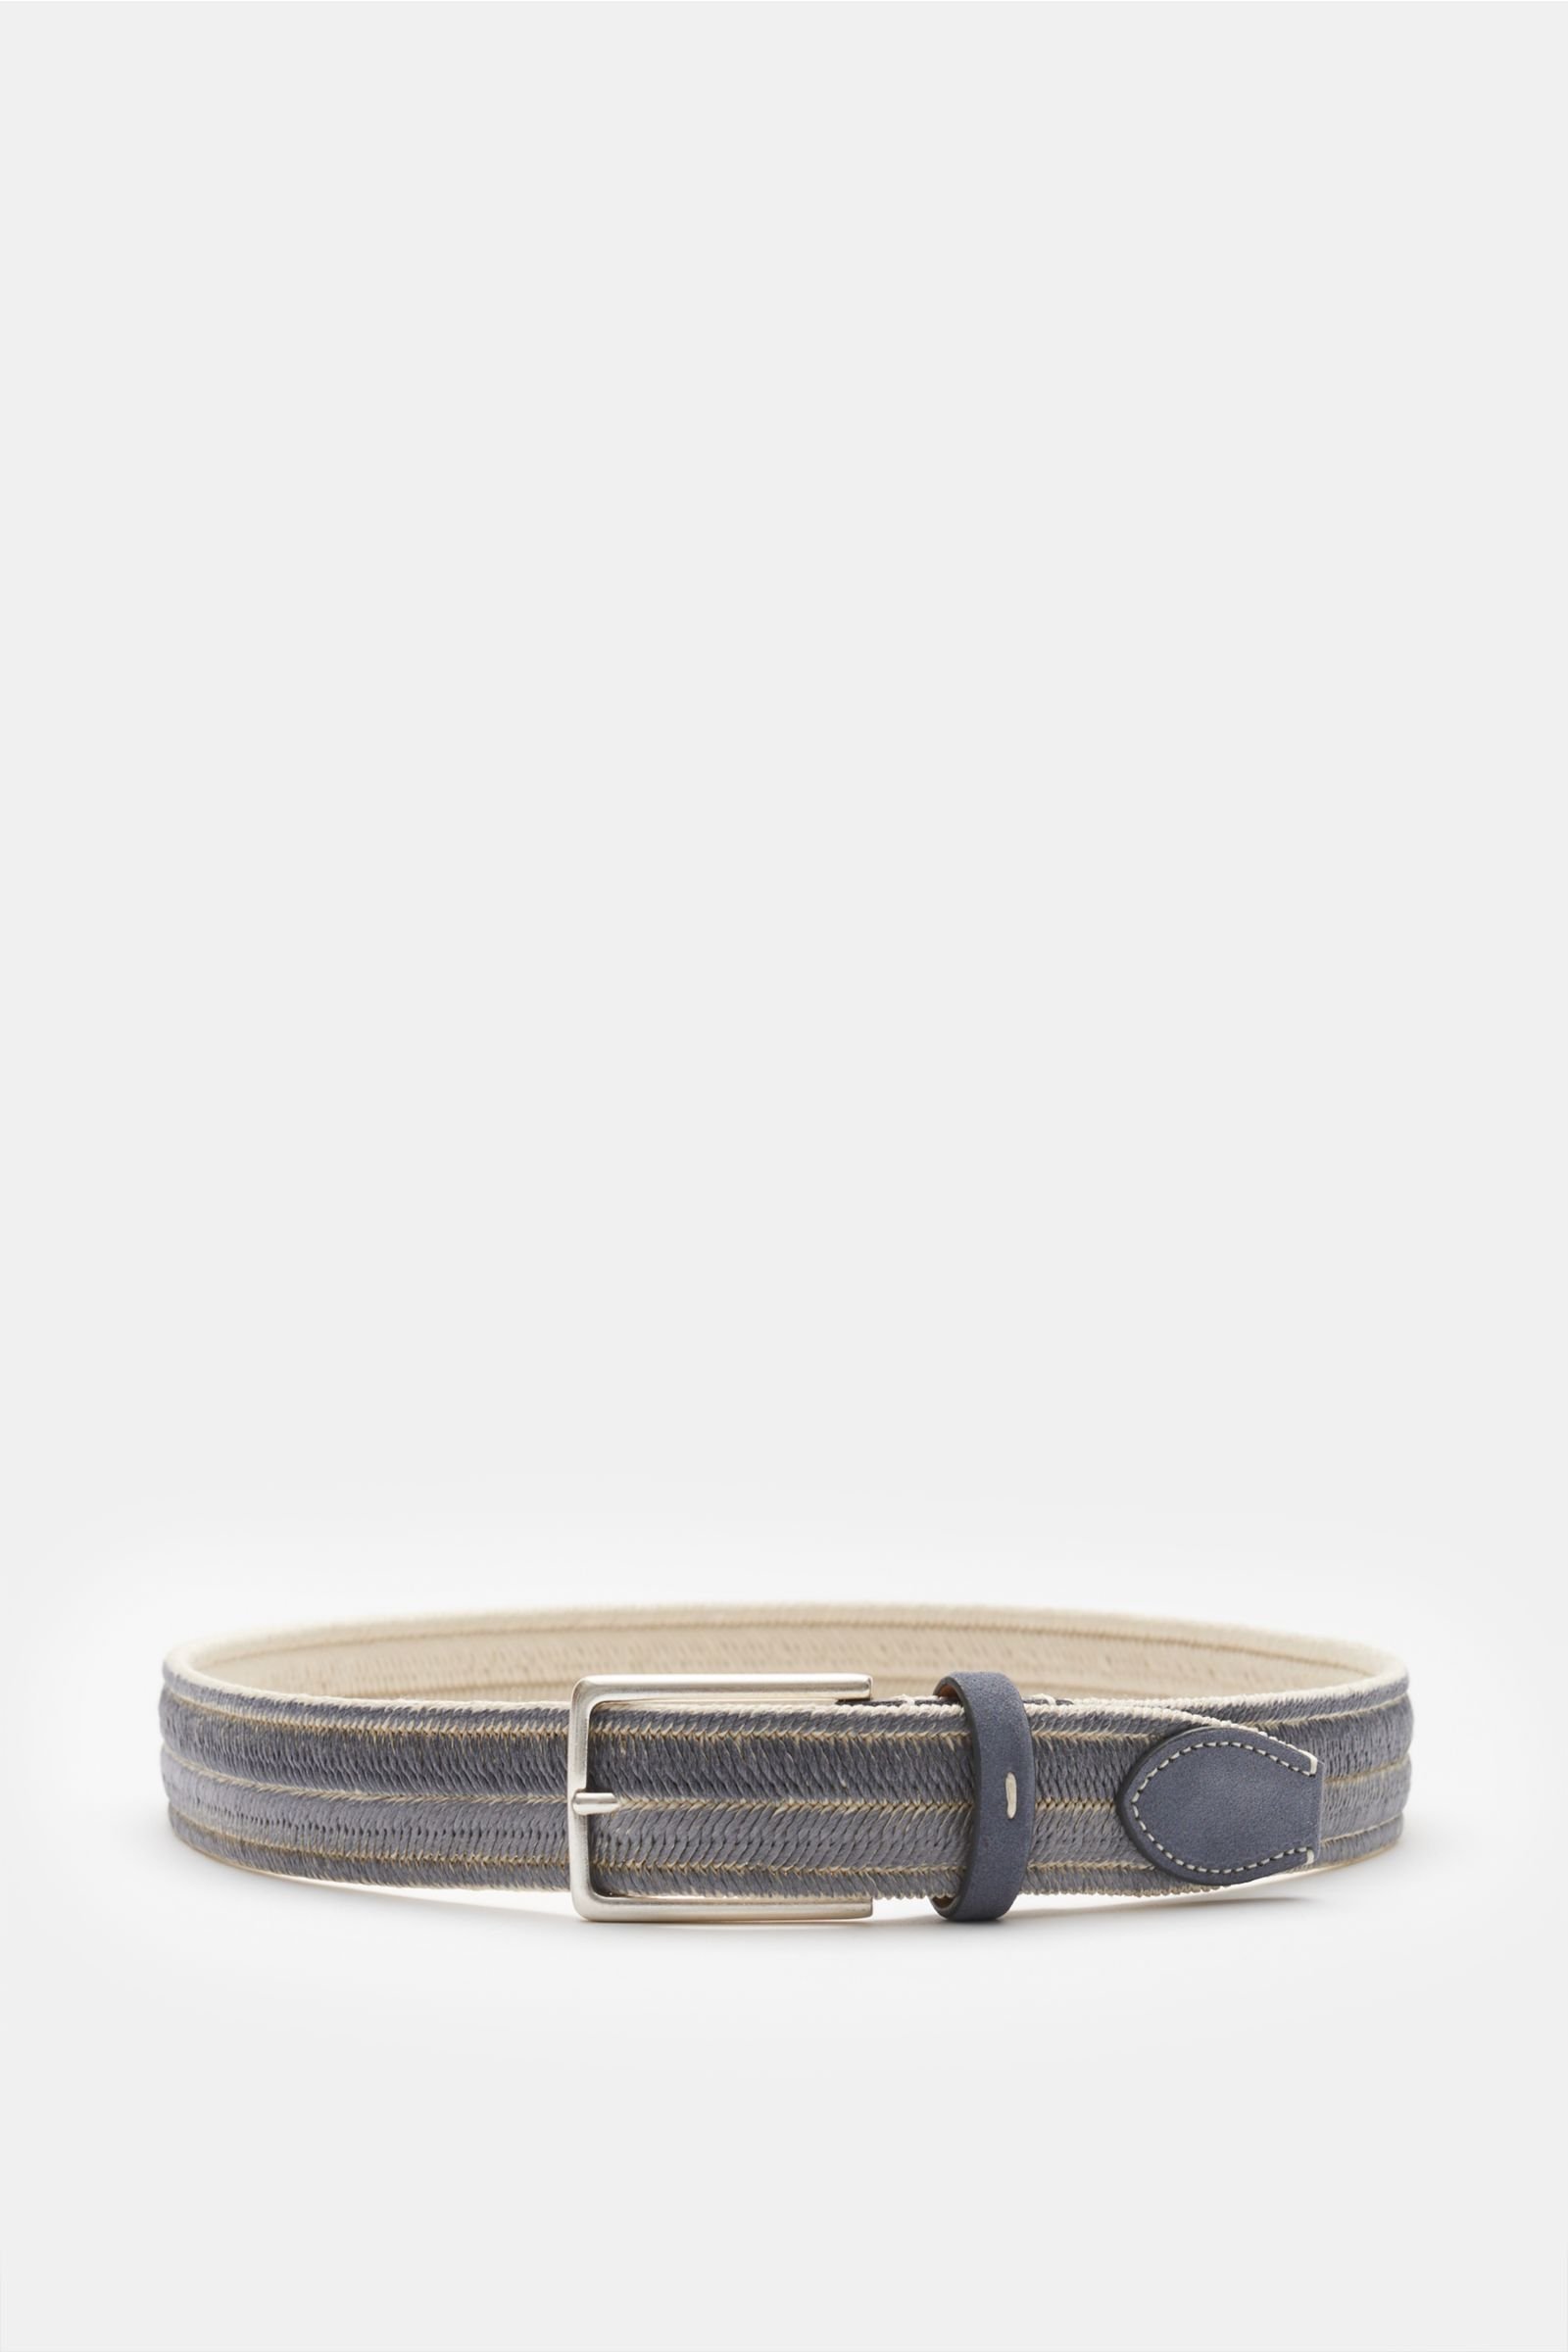 Plaited belt grey/cream